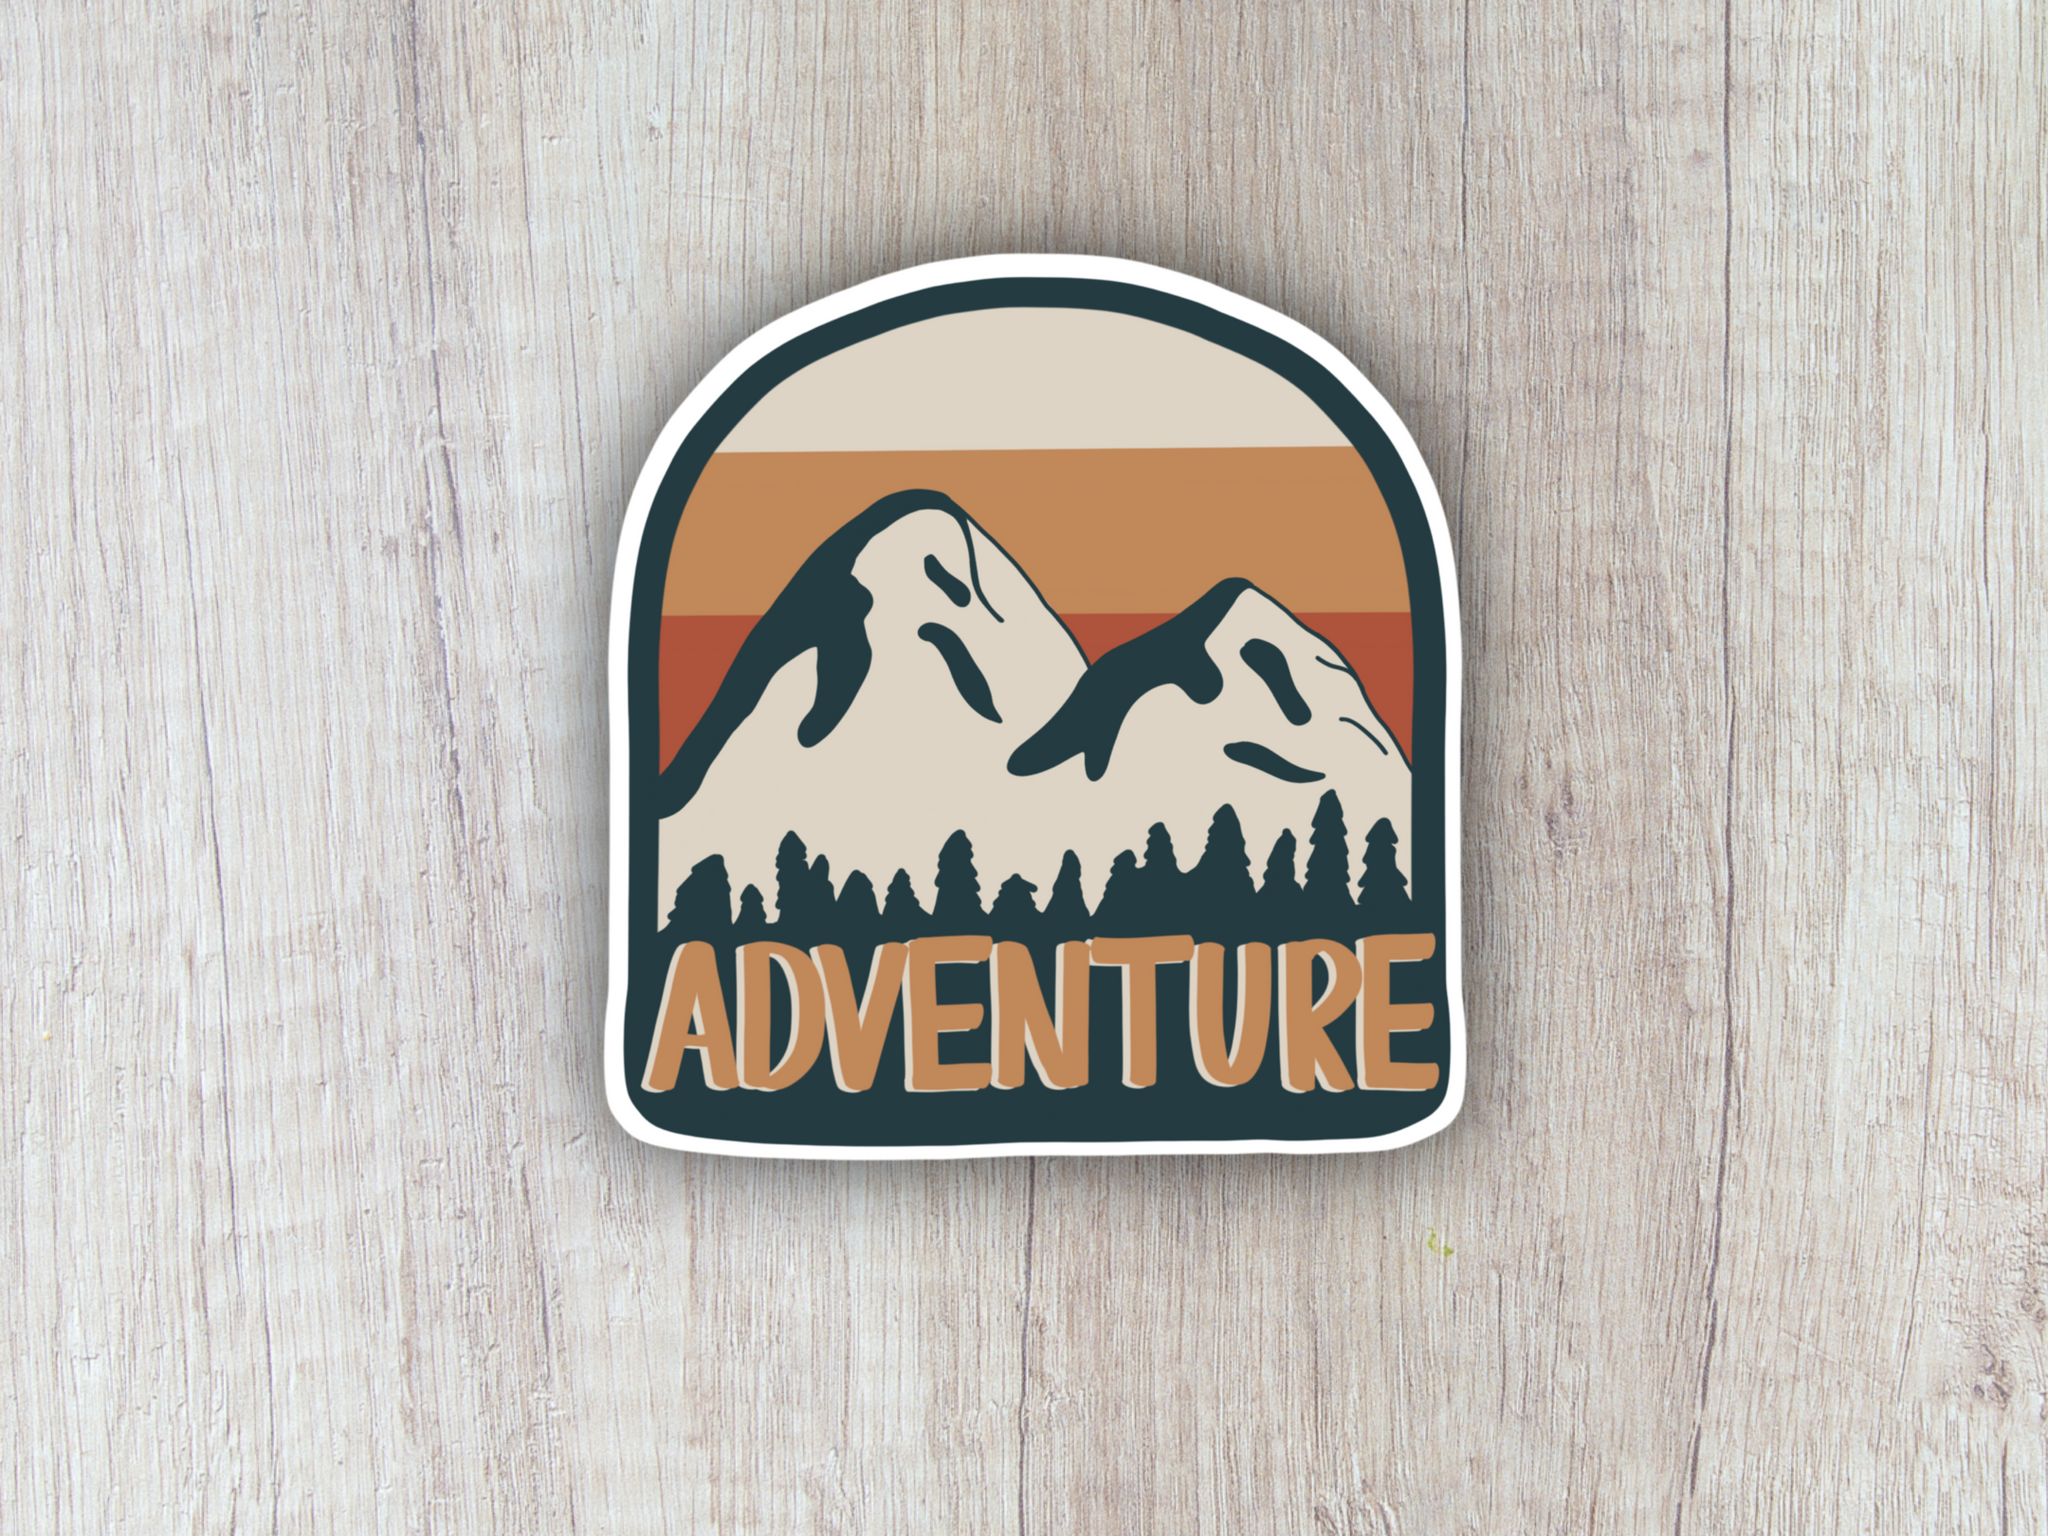 "Adventure" Sticker